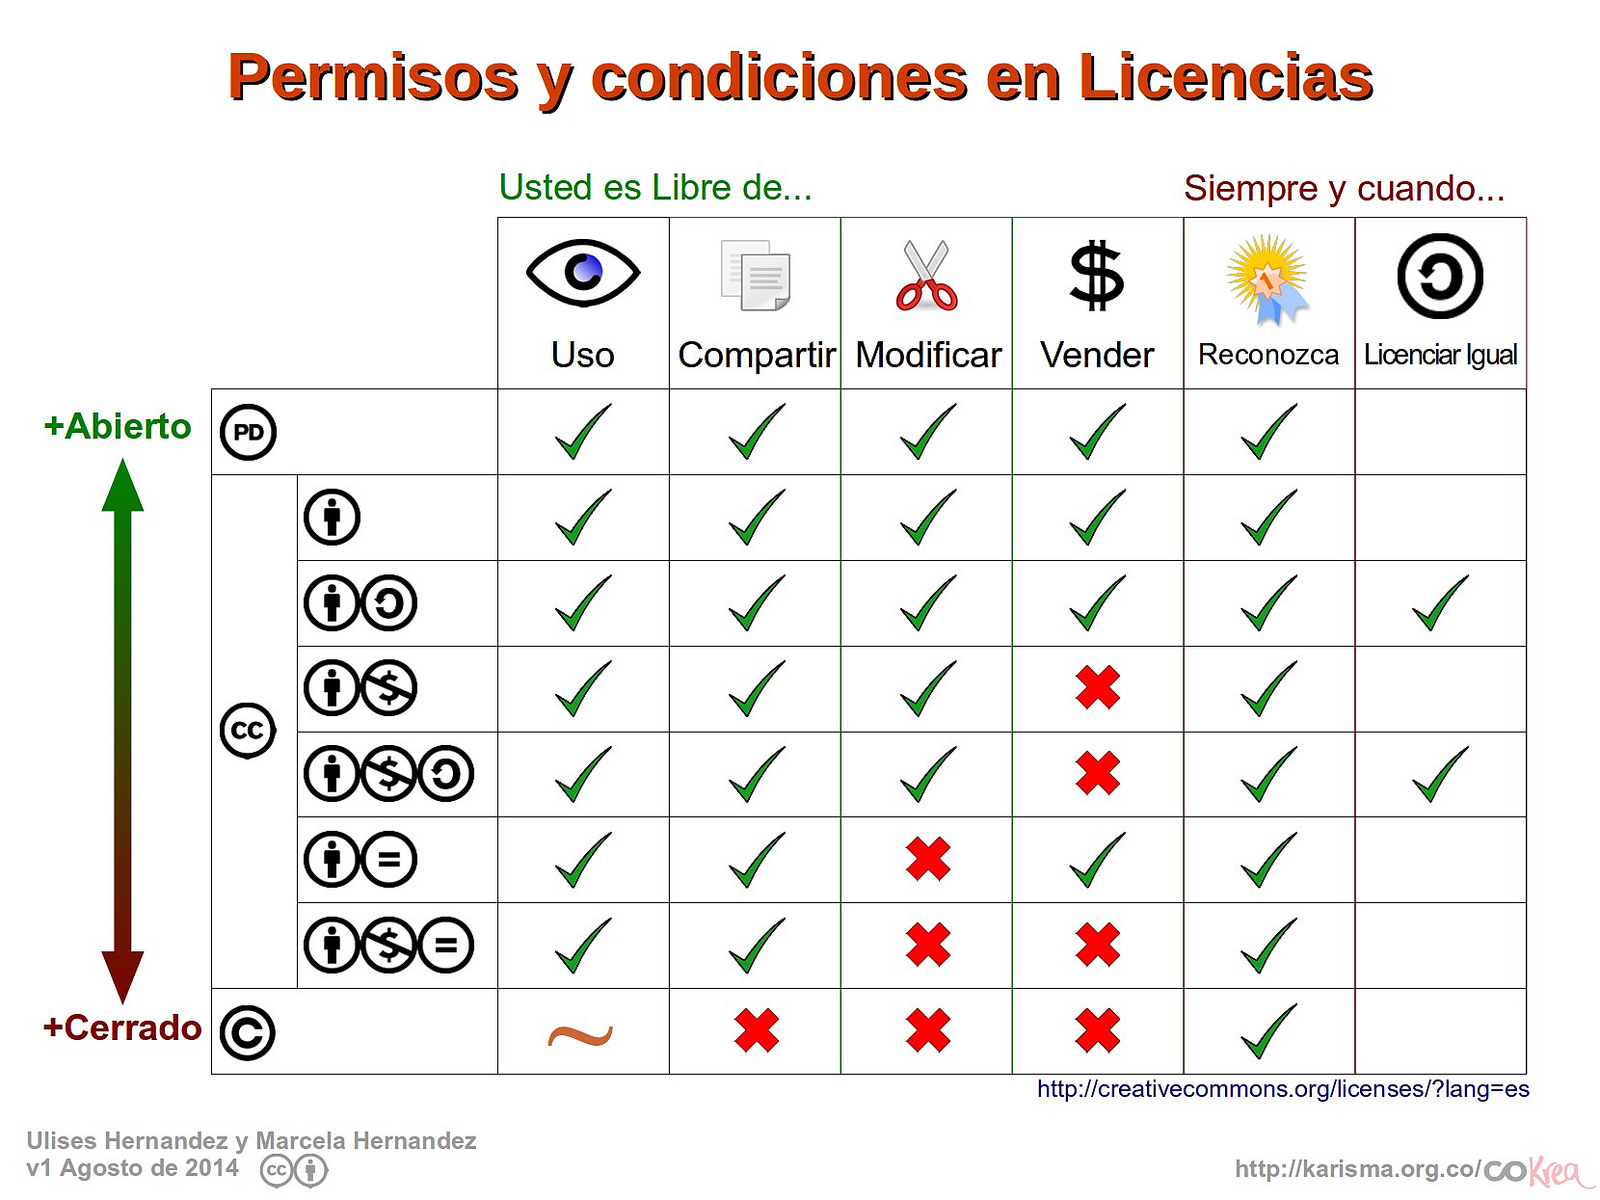 Imagen de permisos y condiciones asociados a licencias de uso